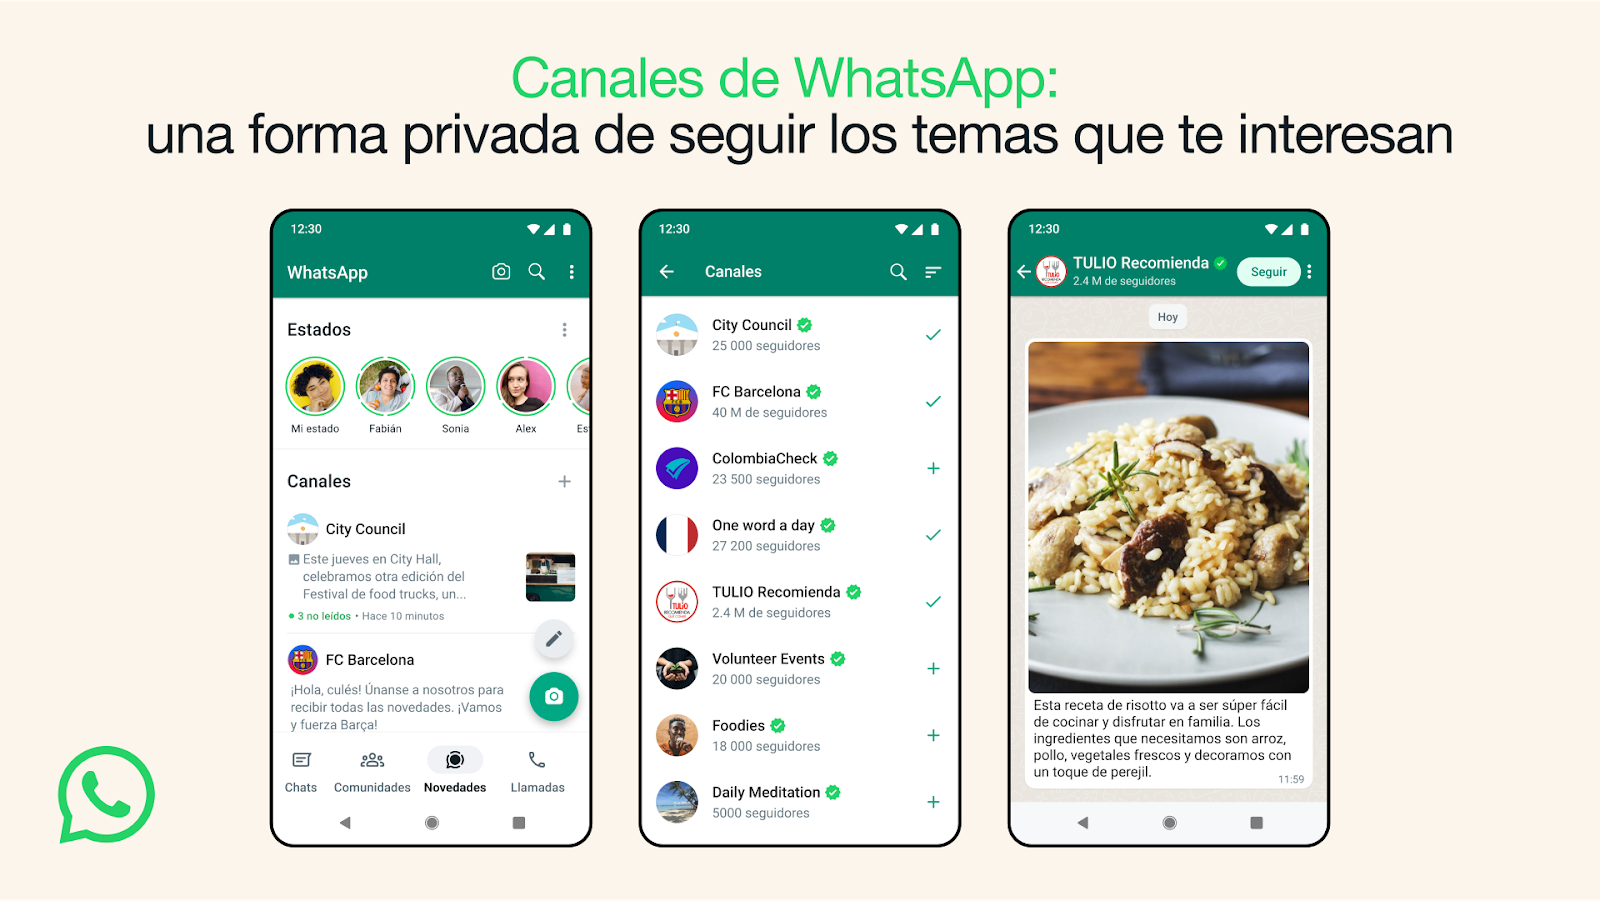 Los canales de WhatsApp: una forma privada de seguir los temas que le interesan